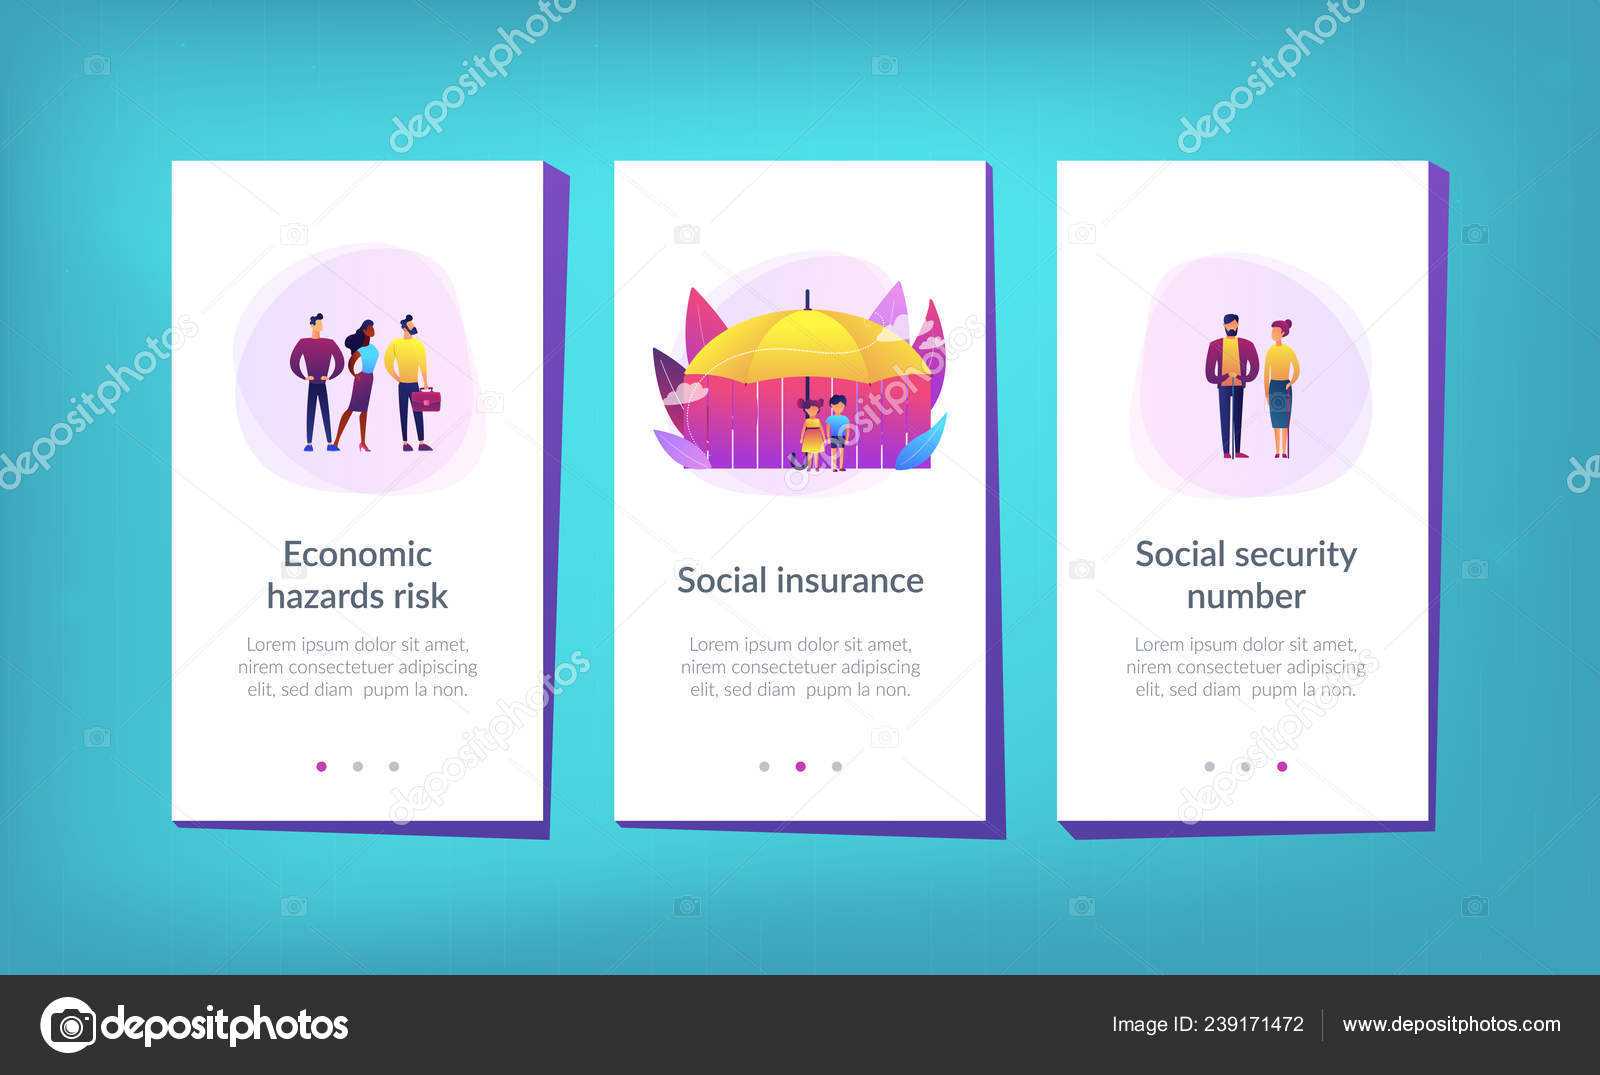 Blank Social Security Card Template | Social Insurance App In Blank Social Security Card Template